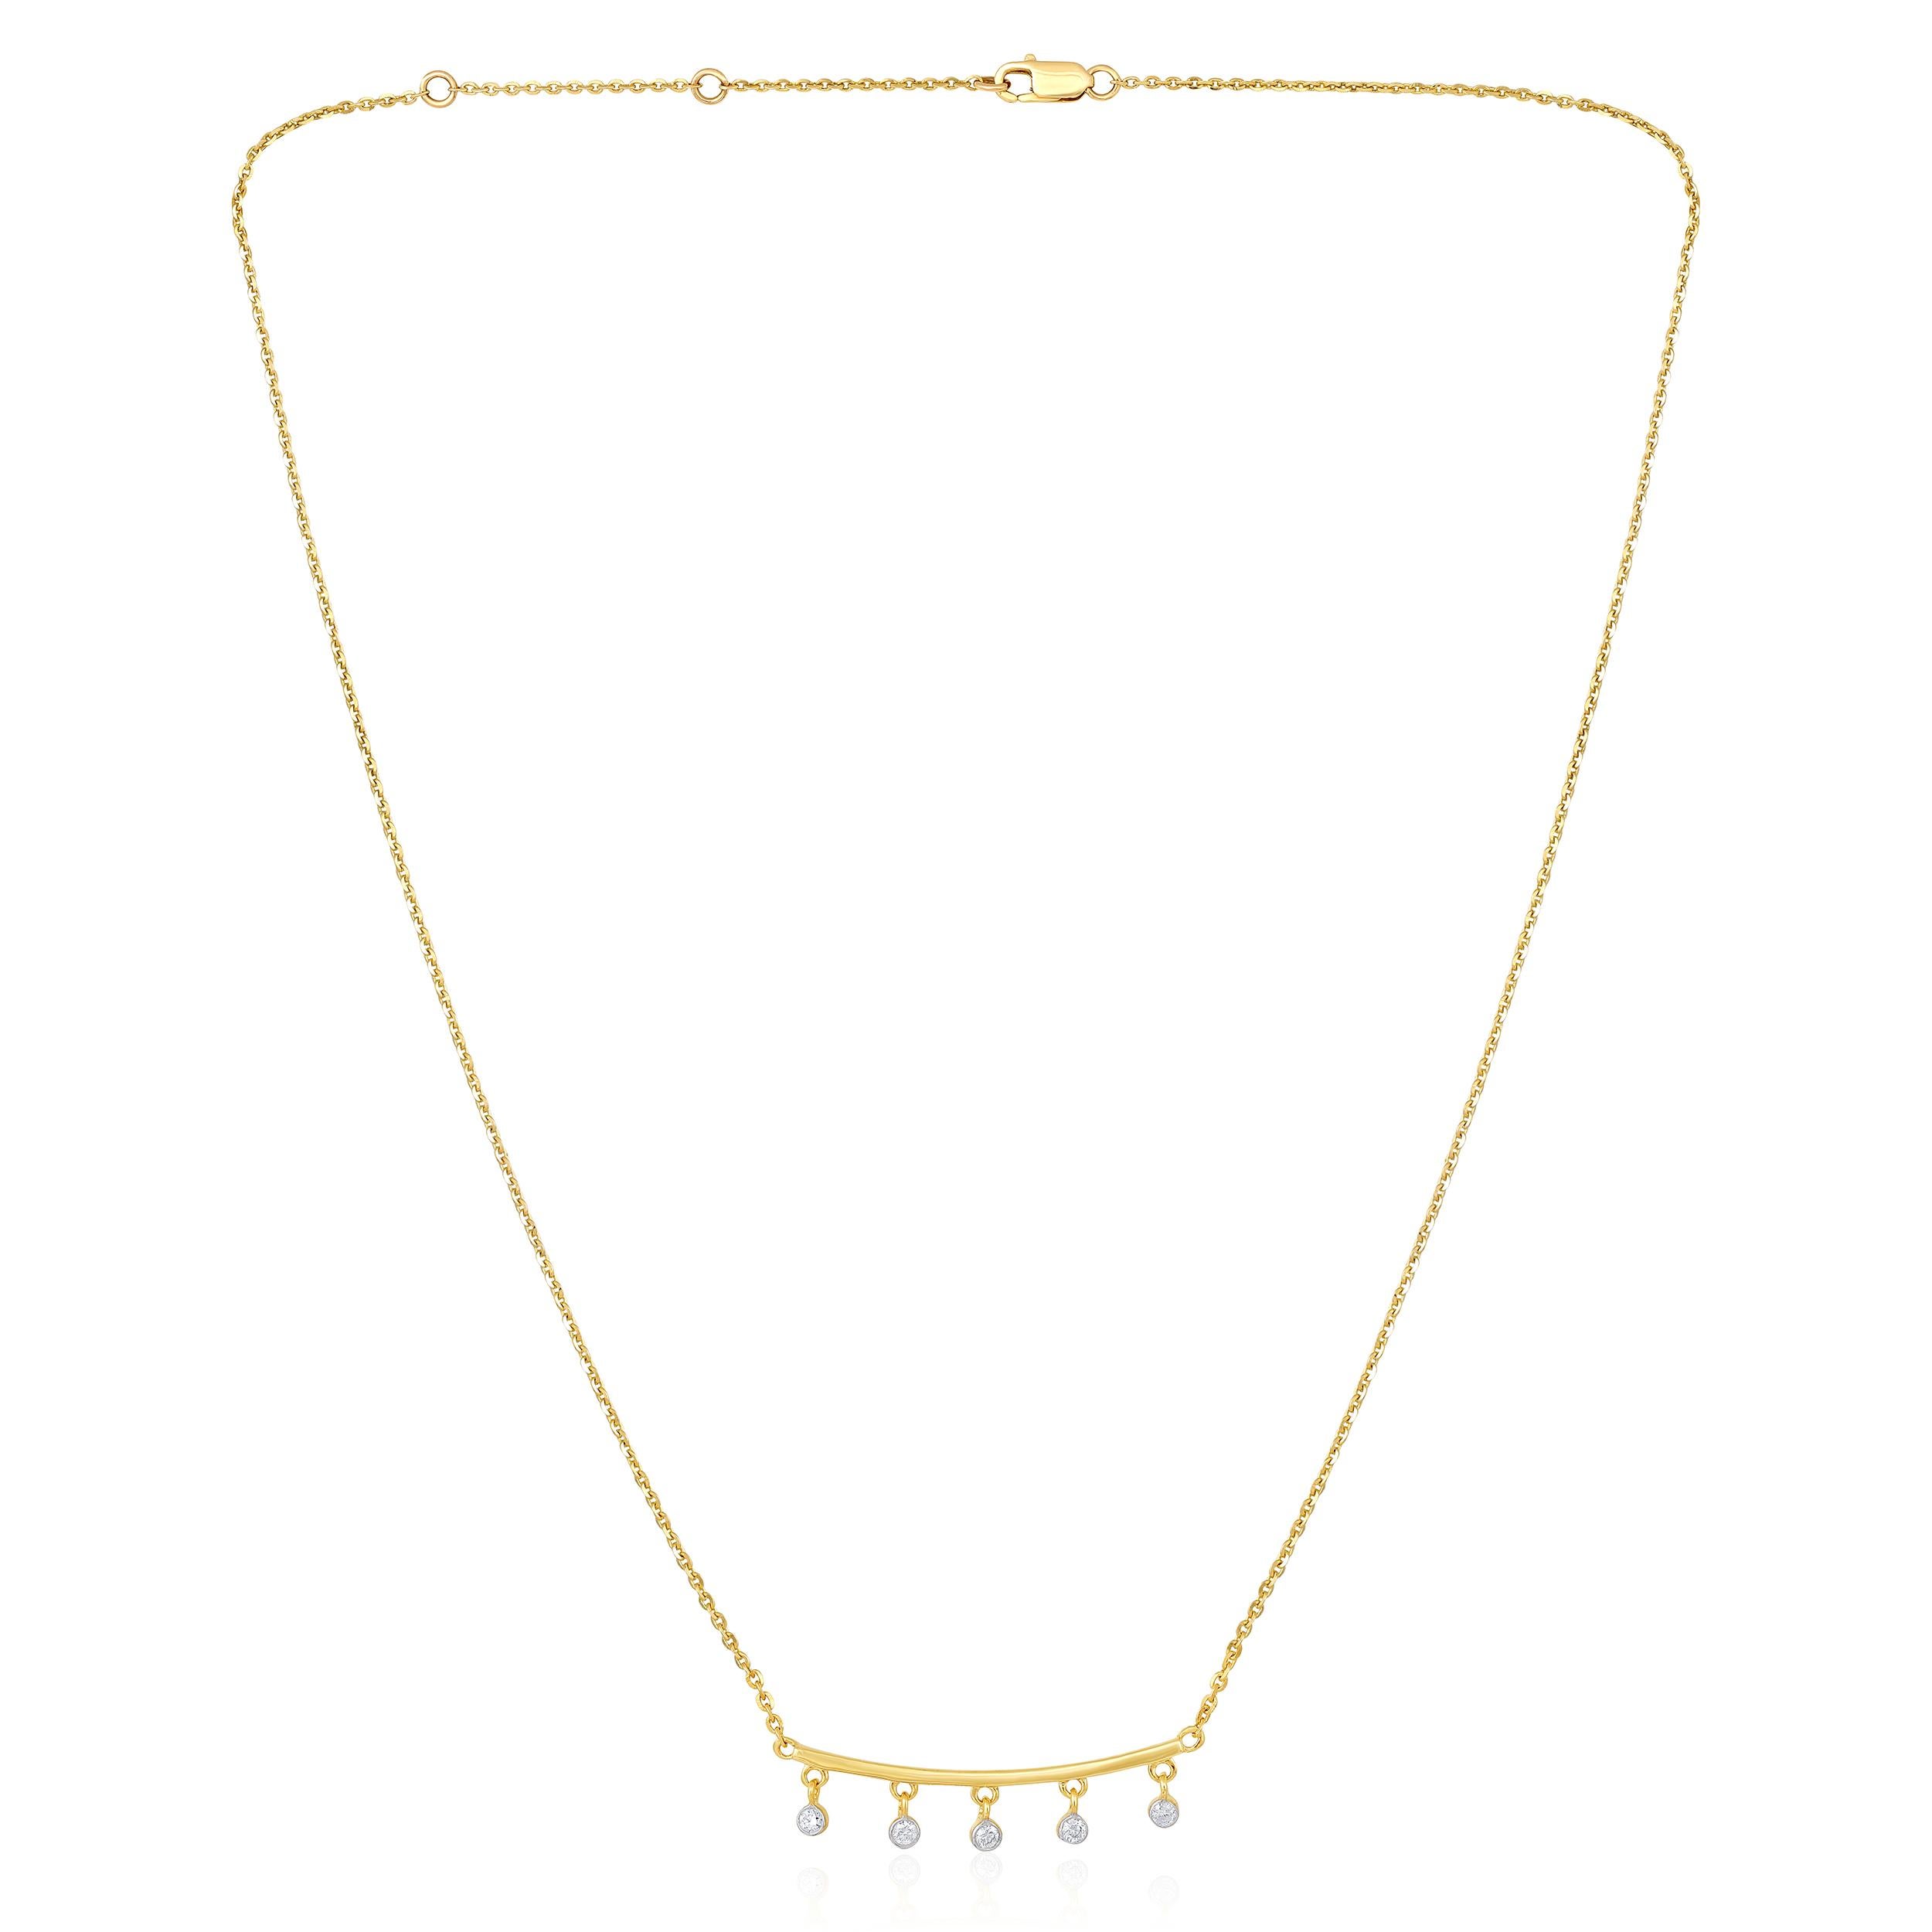 Die Halskette besteht aus 3,64 Gramm 14-karätigem Gelbgold und enthält 5 runde Diamanten mit einem Gesamtgewicht von 0,125 Karat in der Farbe F-G und dem Gewicht I1-I2. Die Länge der Halskette beträgt 18 Zoll.

Dieses Schmuckstück wird auf